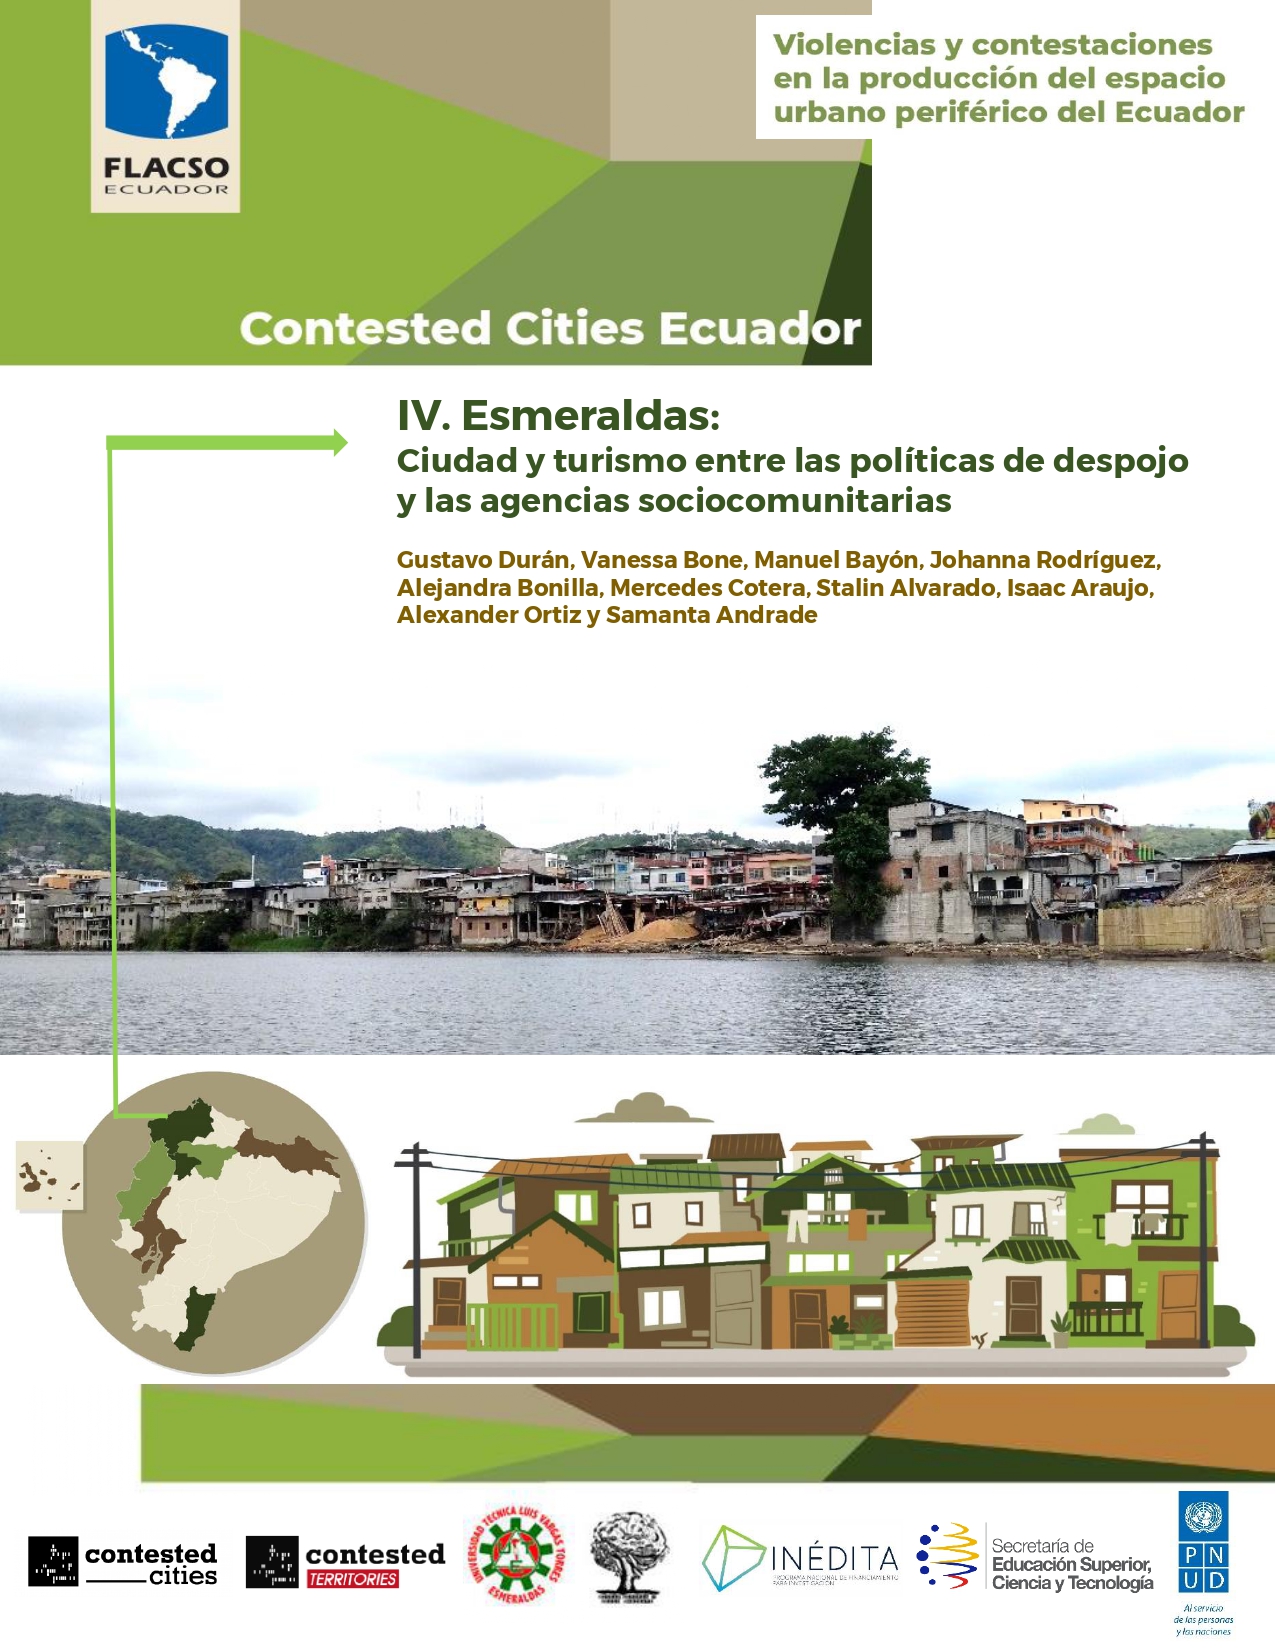 IV. Esmeraldas: Ciudad y turismo entre las políticas de despojo y las agencias sociocomunitarias